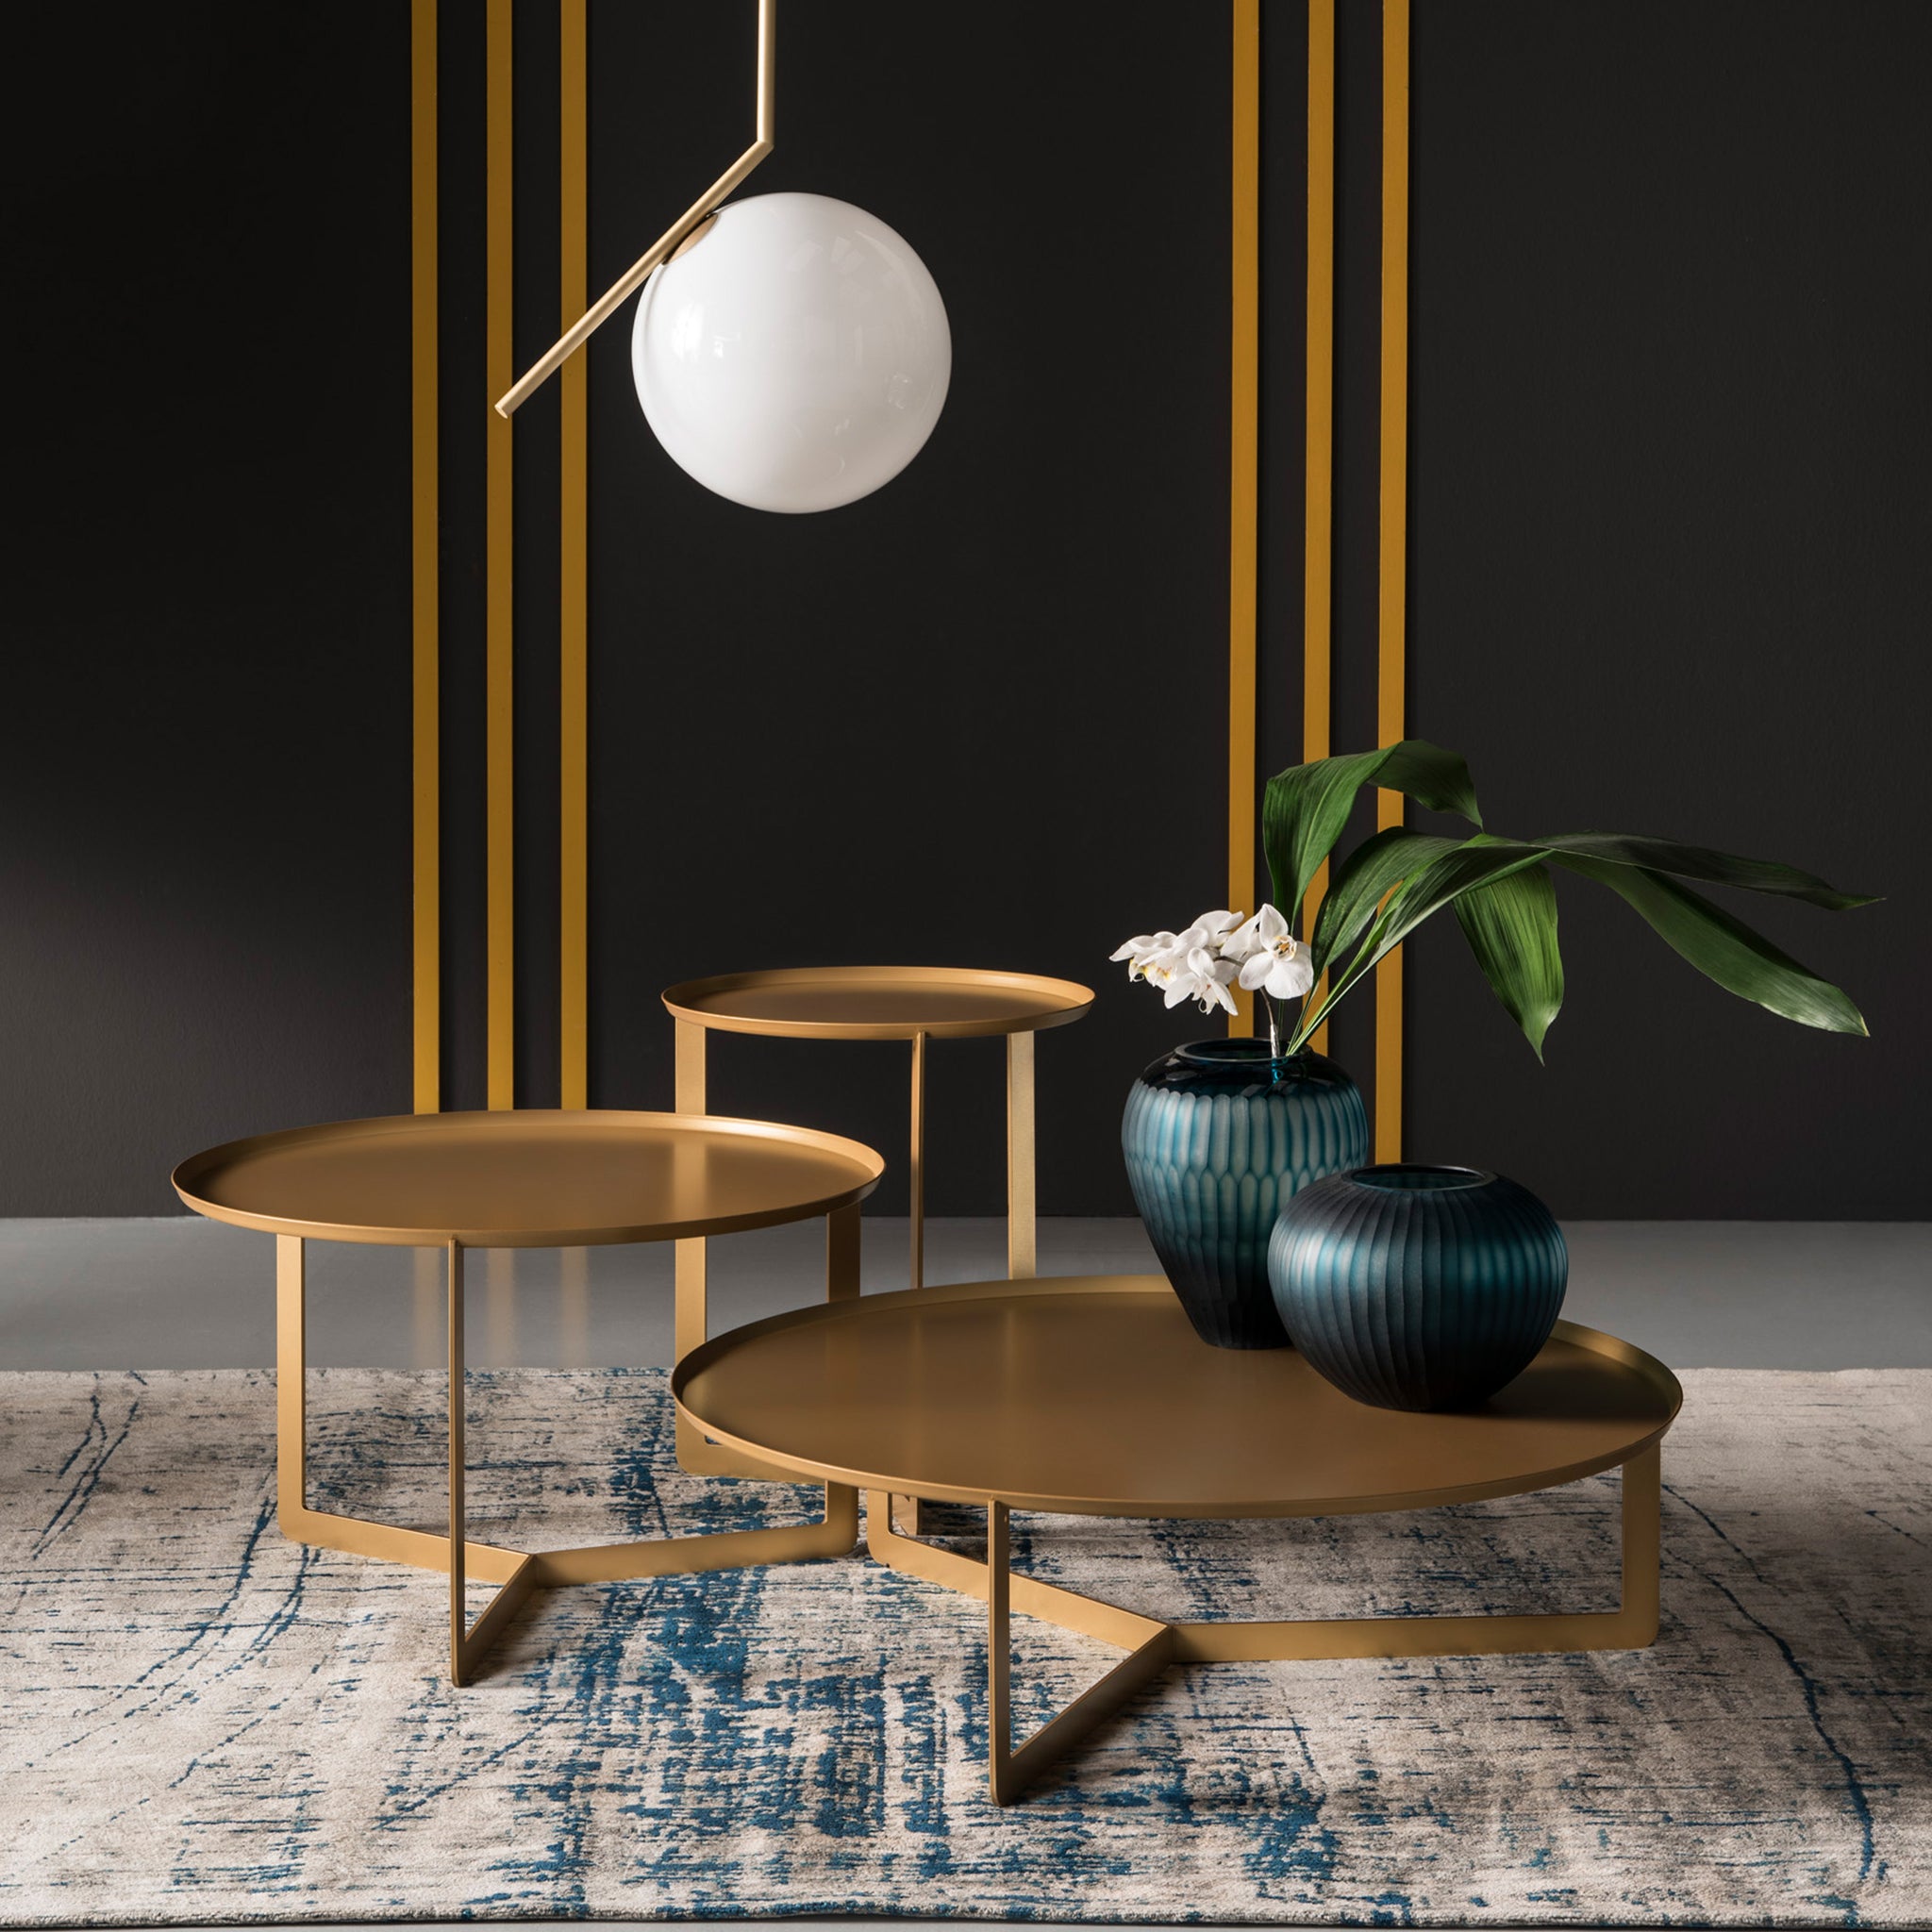 Round collezione tavolini rotondi da soggiorno in 3 misure in oro metallizzato